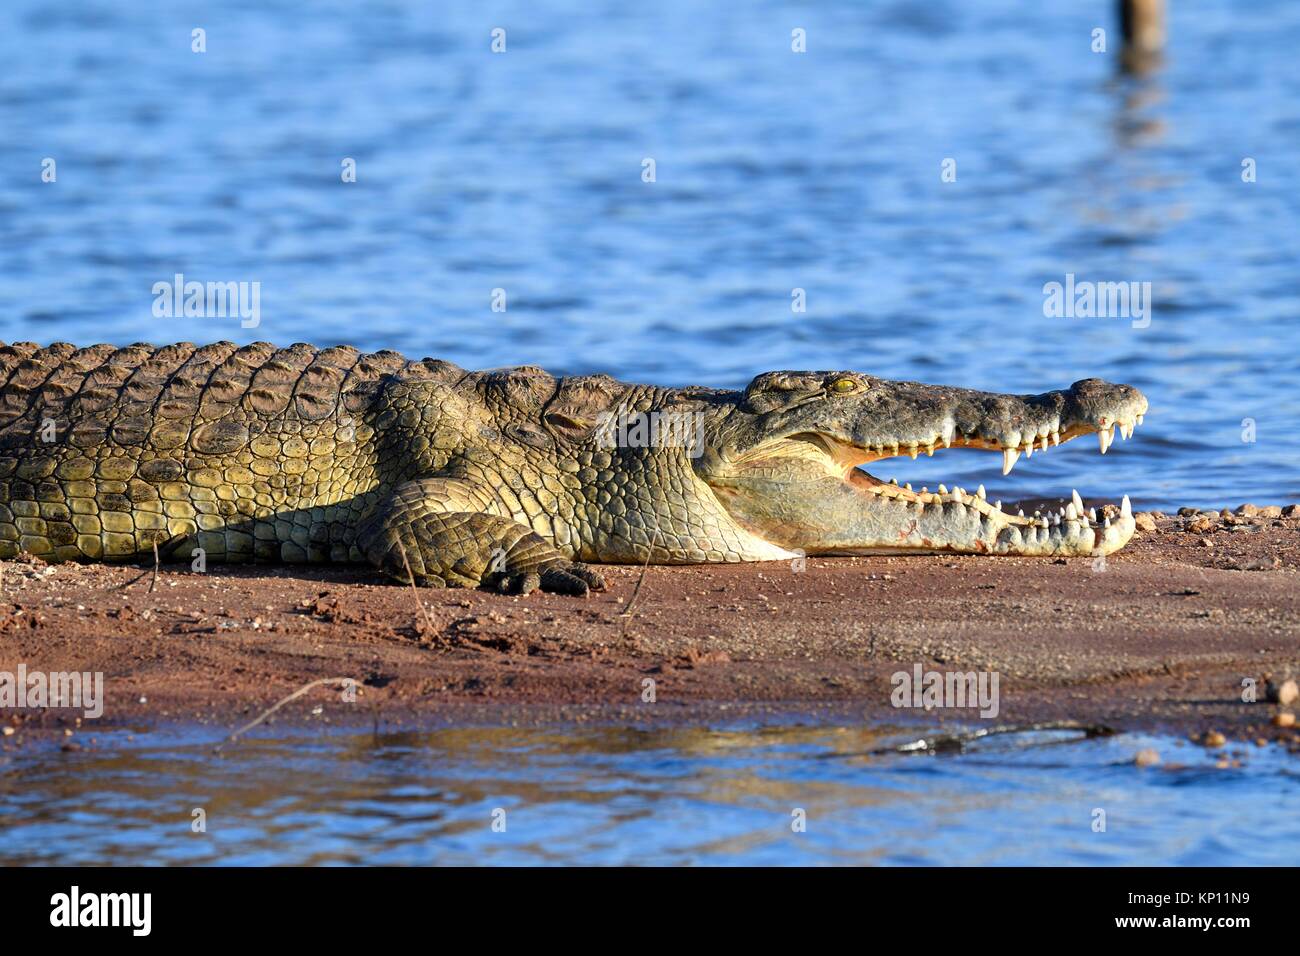 Le crocodile du Nil (Crocodylus niloticus) reposant sur les rives du lac Kariba avec sa mâchoire ouverte. Matusadona National Park, Zimbabwe. Banque D'Images